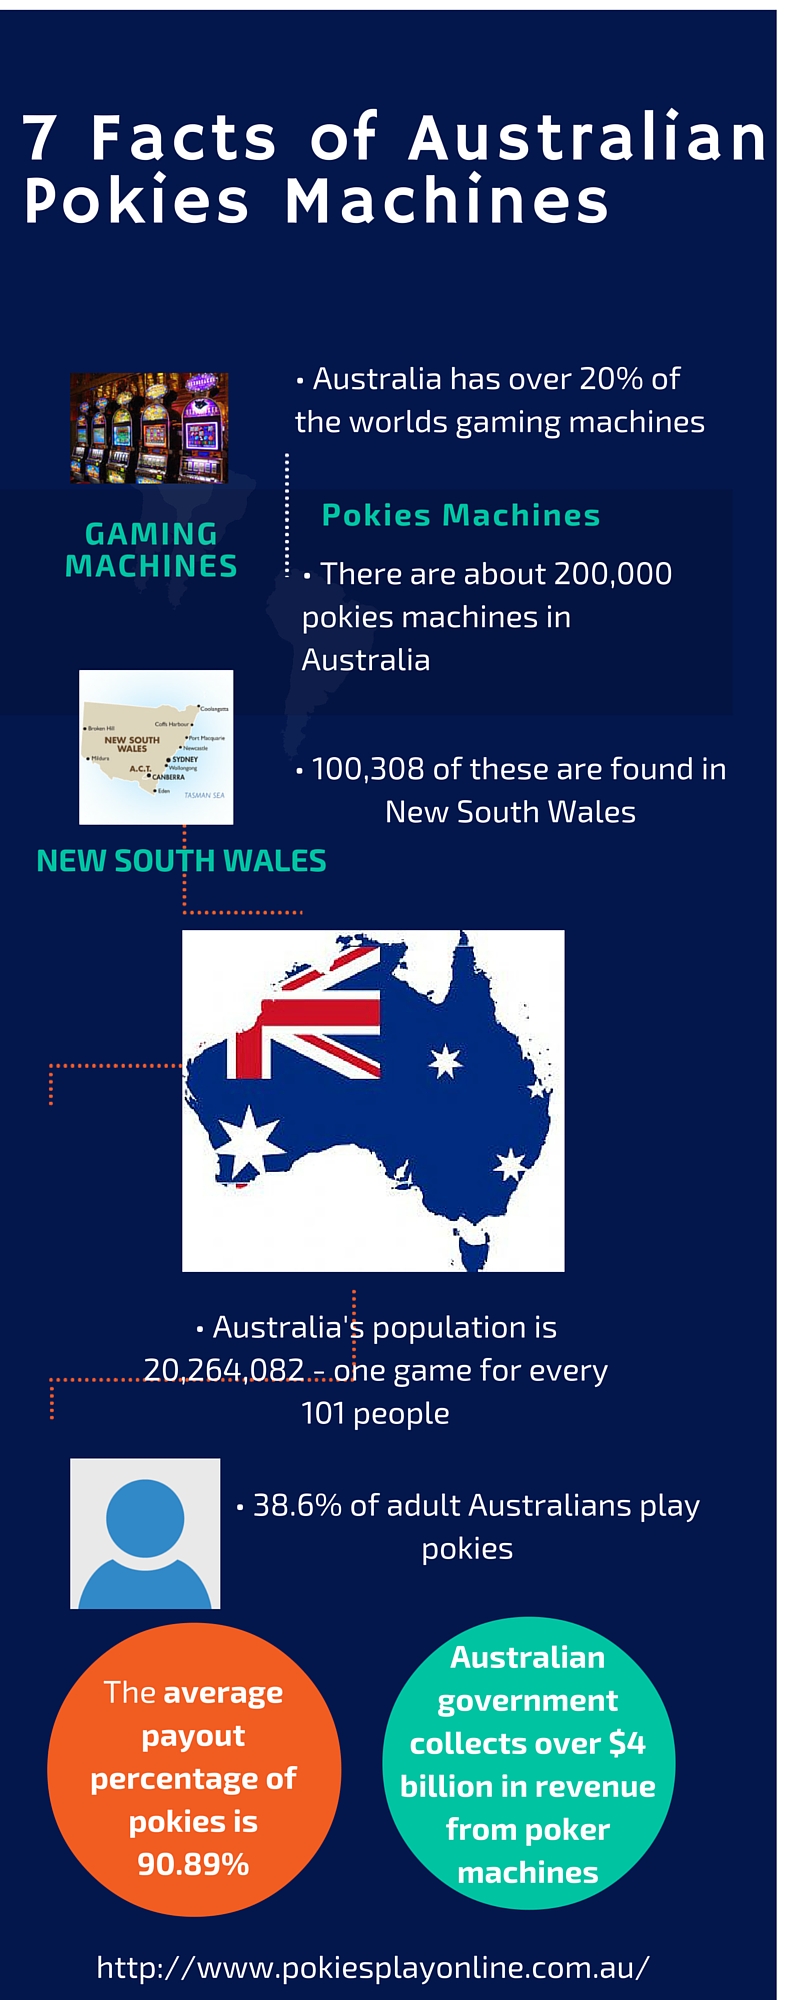 7- Facts of Australian Pokies